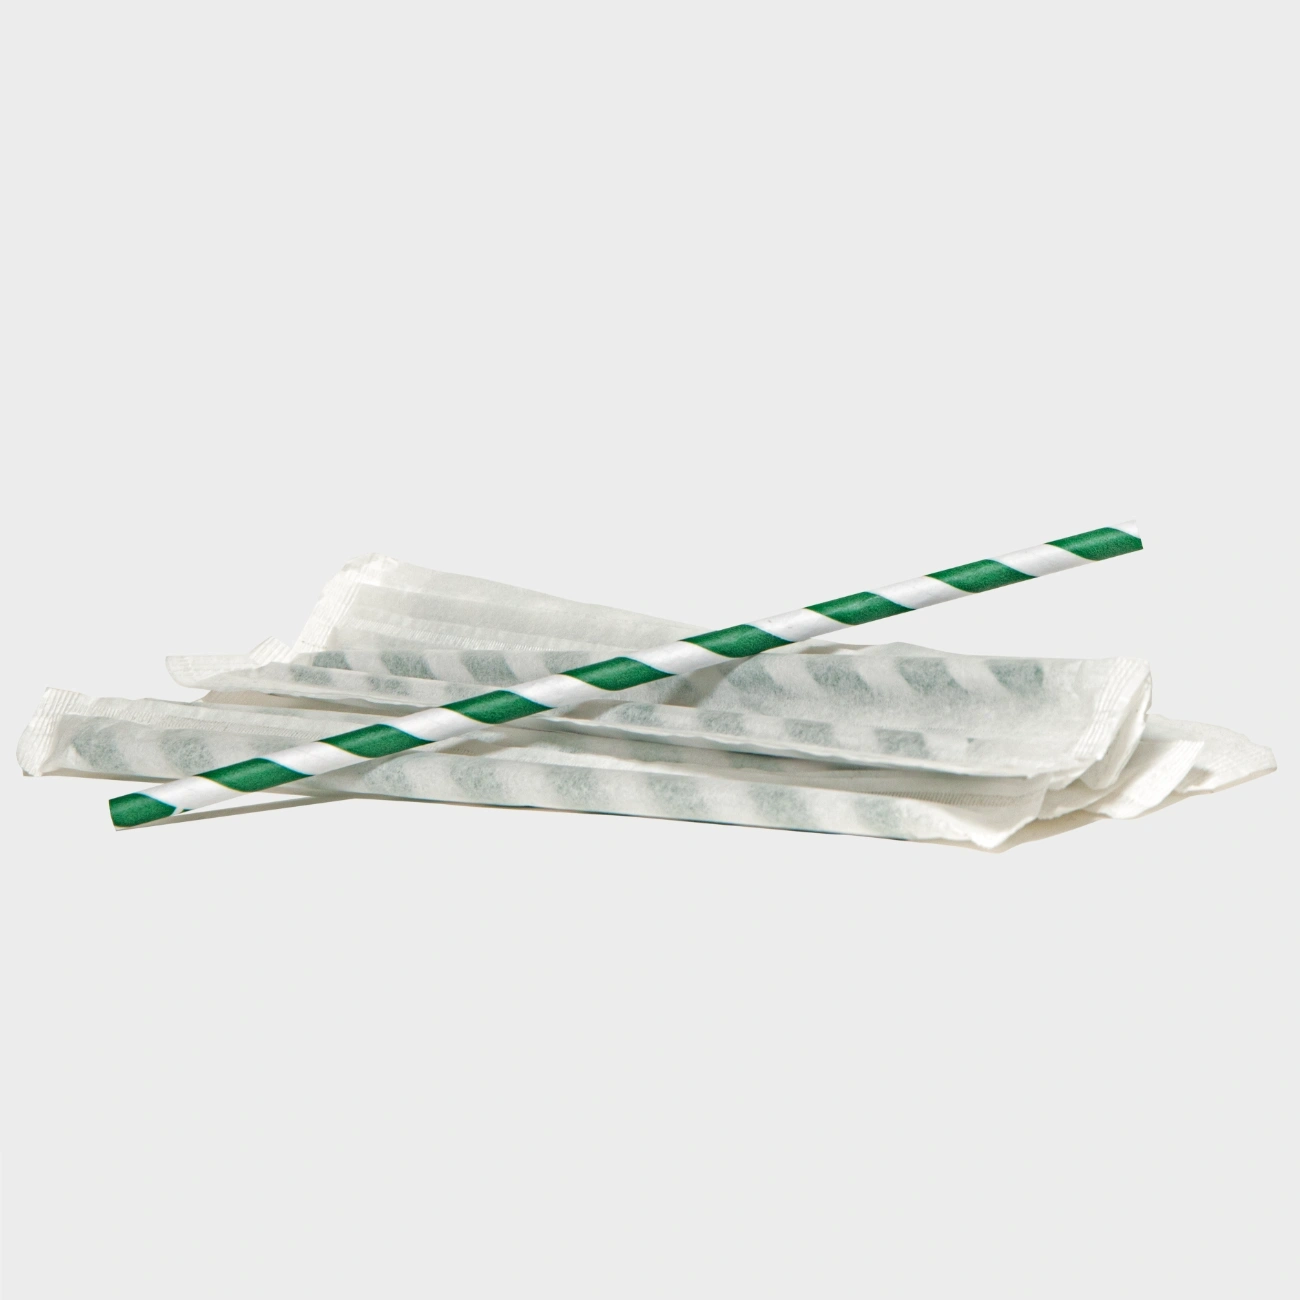 Papierröhren, weiß und grün, 30 Stück.